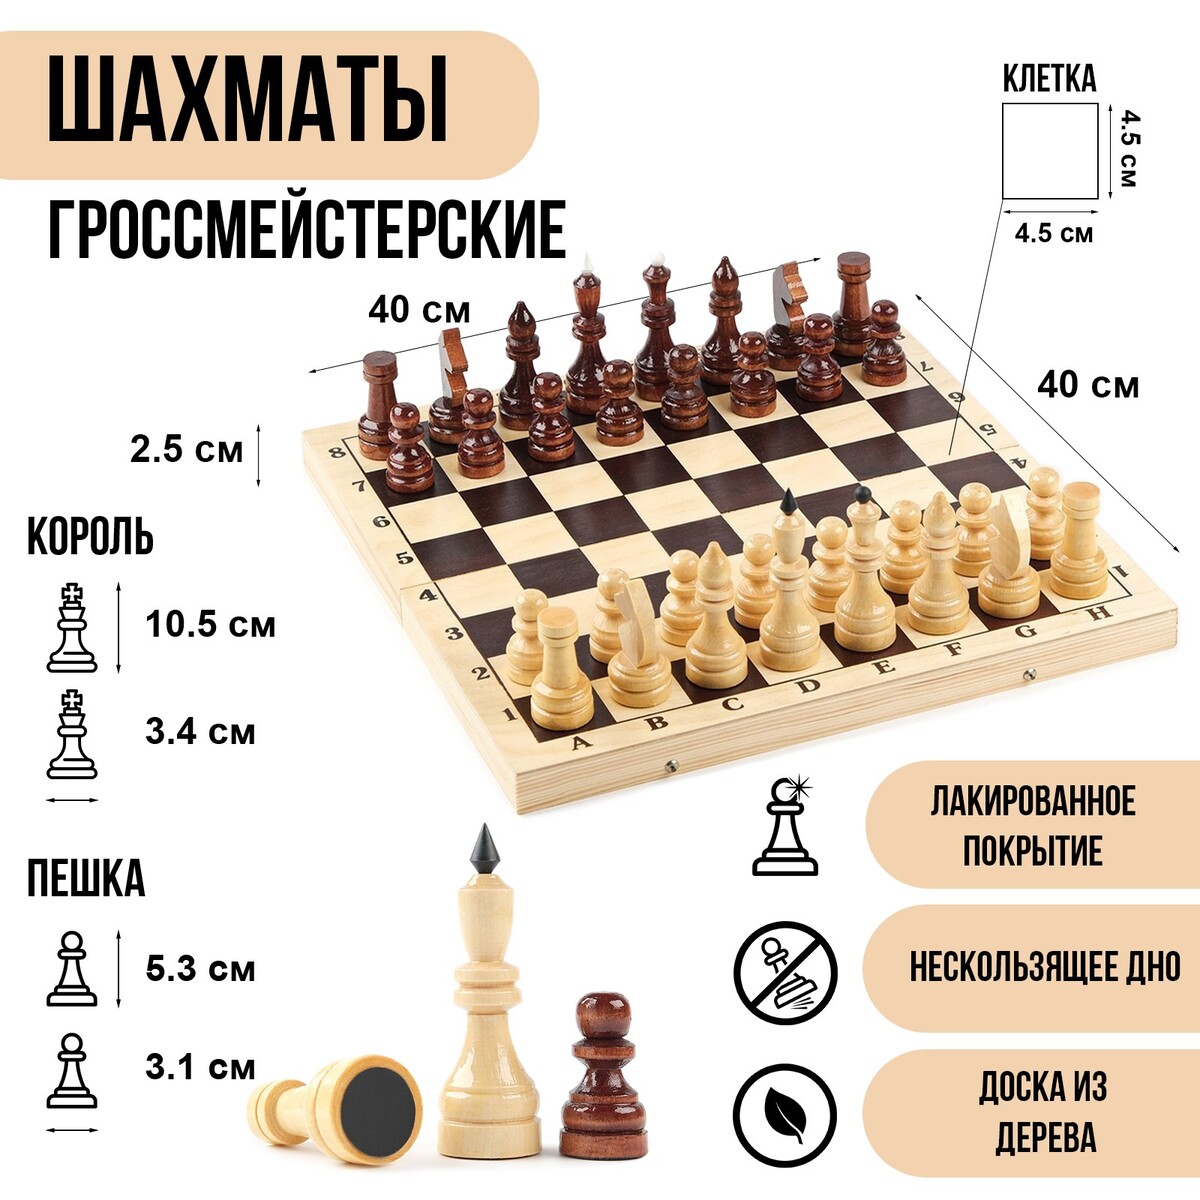 Шахматы деревянные гроссмейстерские, турнирные, король h-10.5 см, пешка h-5.3 см шахматы деревянные 50 х 50 см